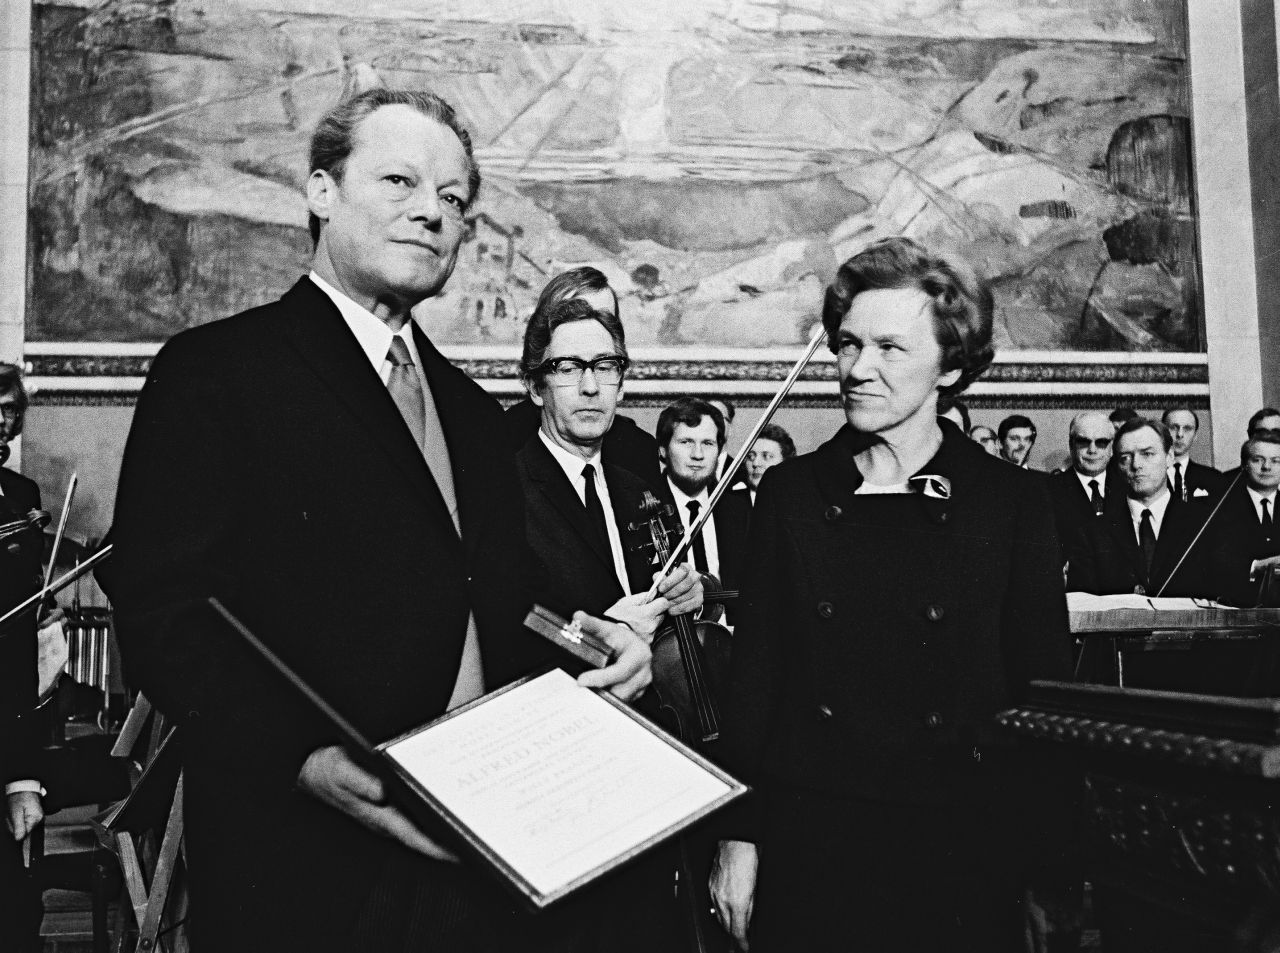 Willy Brandt, links im Bild, hält den Friedensnobelpreis, d.h. eine Urkunde, und ein Kästchen in den Händen und schaut über die Kamera hinweg. Neben ihm steht Aase Lionæs, die ihn anschaut. Im Hintergrund steht ein Orchester.